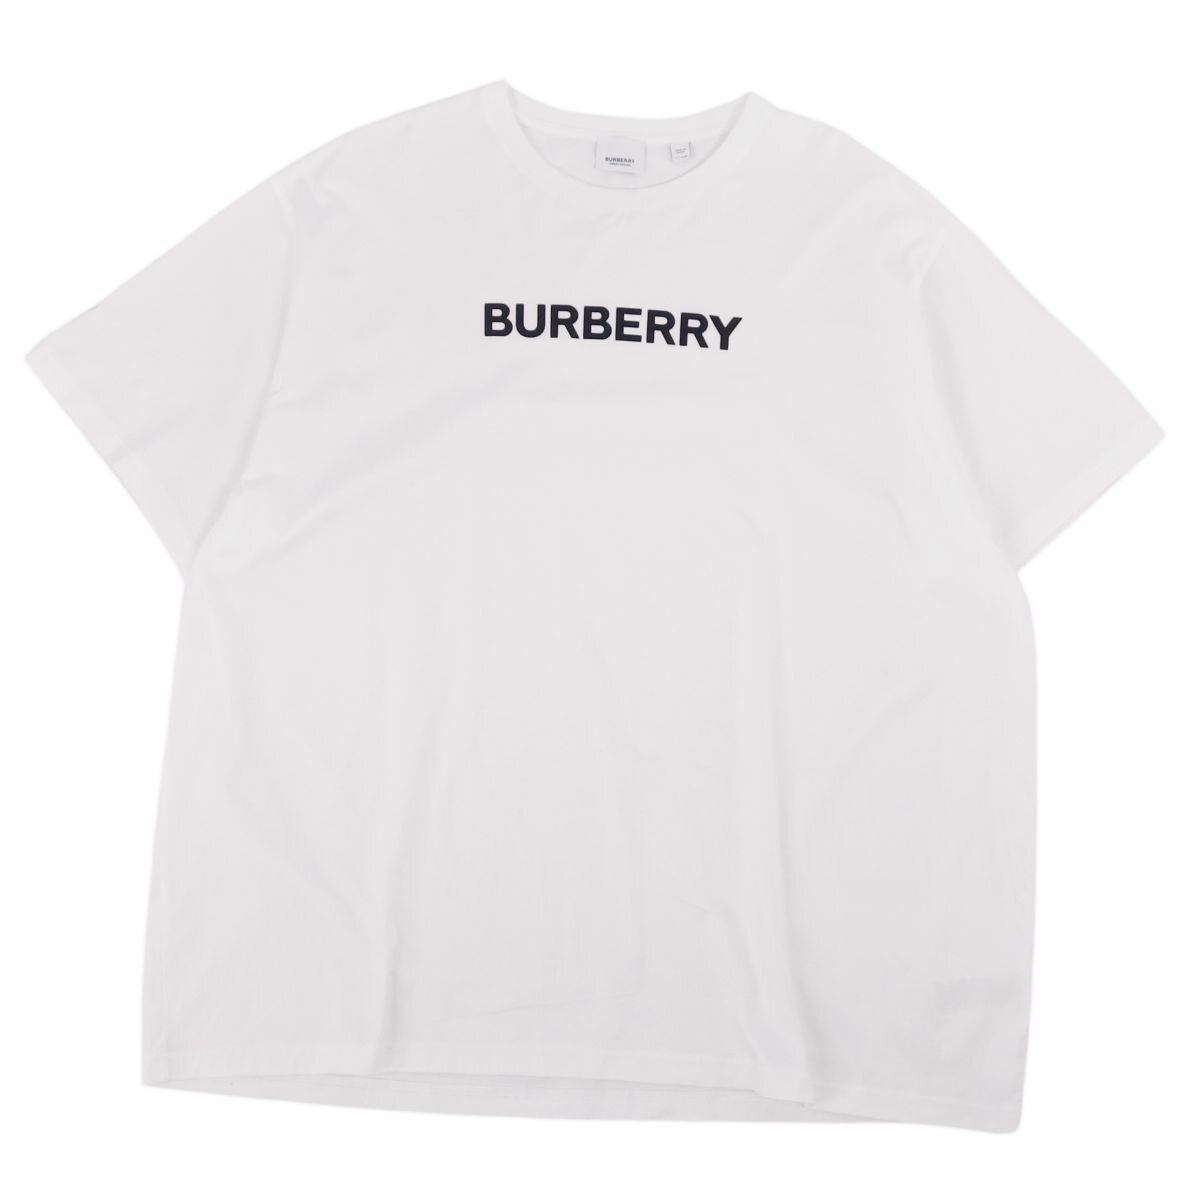 【美品】バーバリー BURBERRY Tシャツ カットソー 半袖 ショートスリーブ ロゴプリント トップス メンズ XXXL ホワイト【中古】